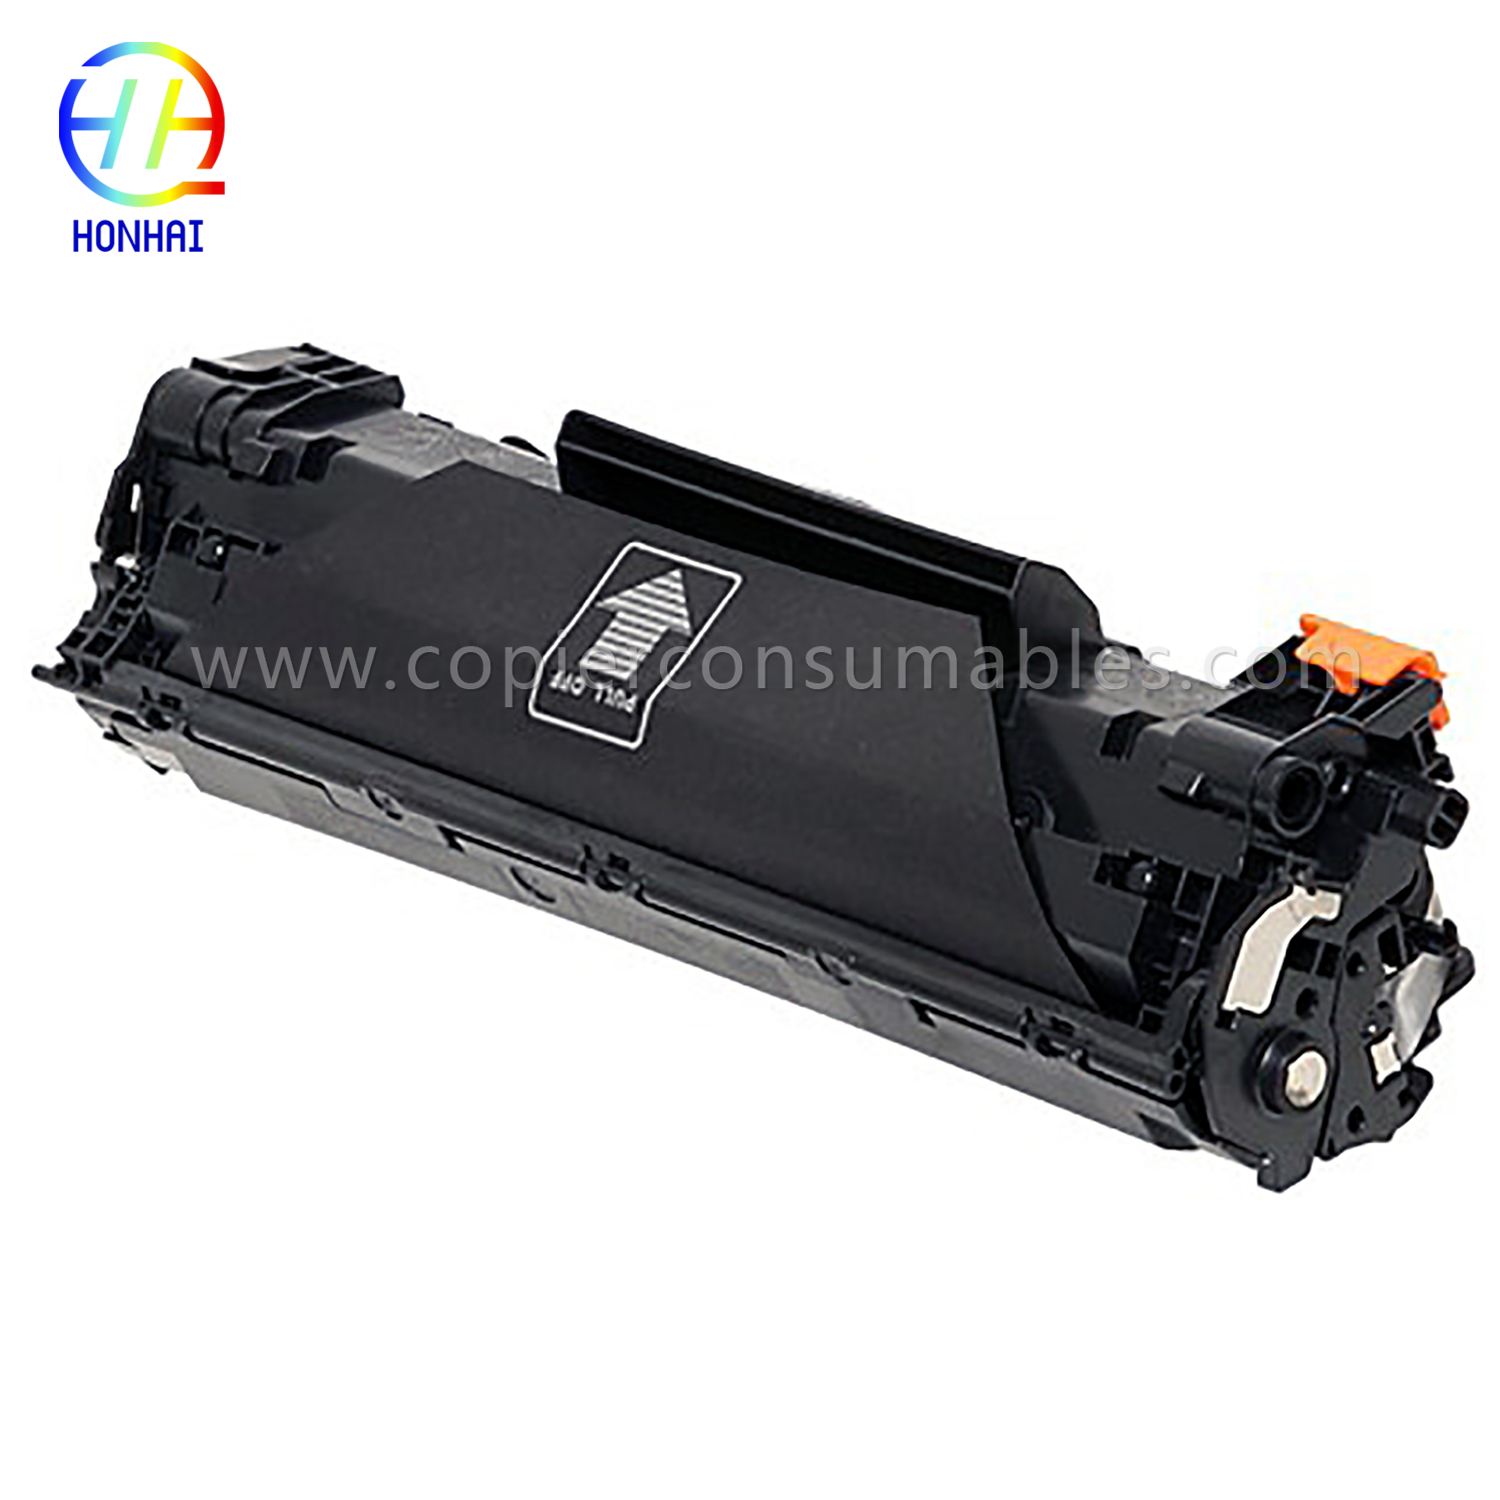 Qora toner kartridji HP LaserJet Pro M1536dnf P1606dn (CE278A) 13,8x5,1x6,4